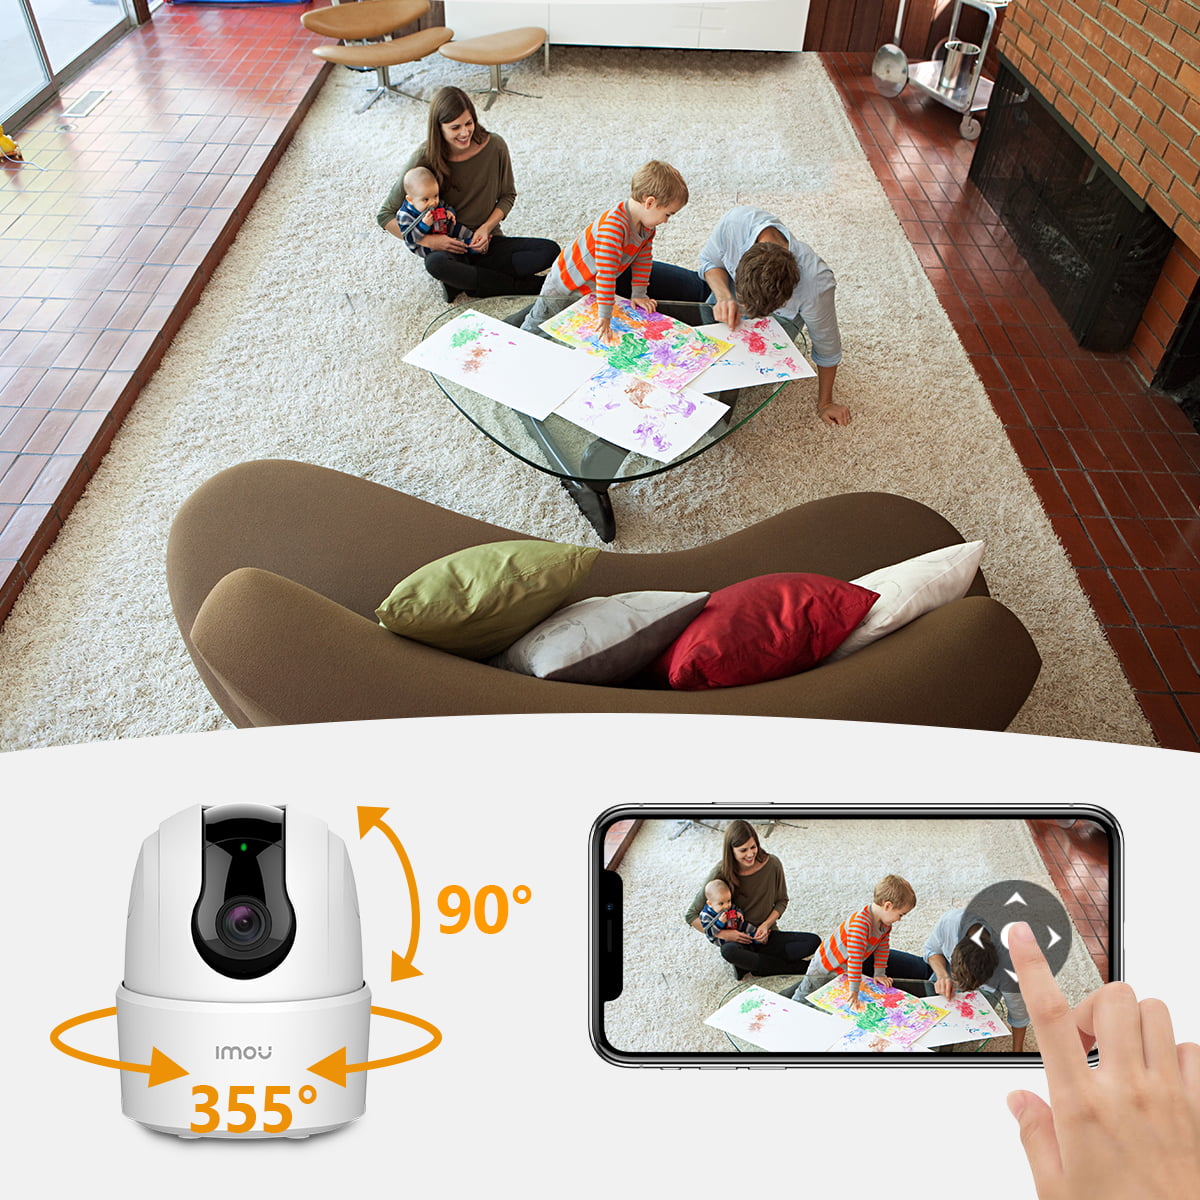 Imou Caméra Surveillance WiFi Intérieur - Compatible avec Homekit lmou -  Homekit Accessoires